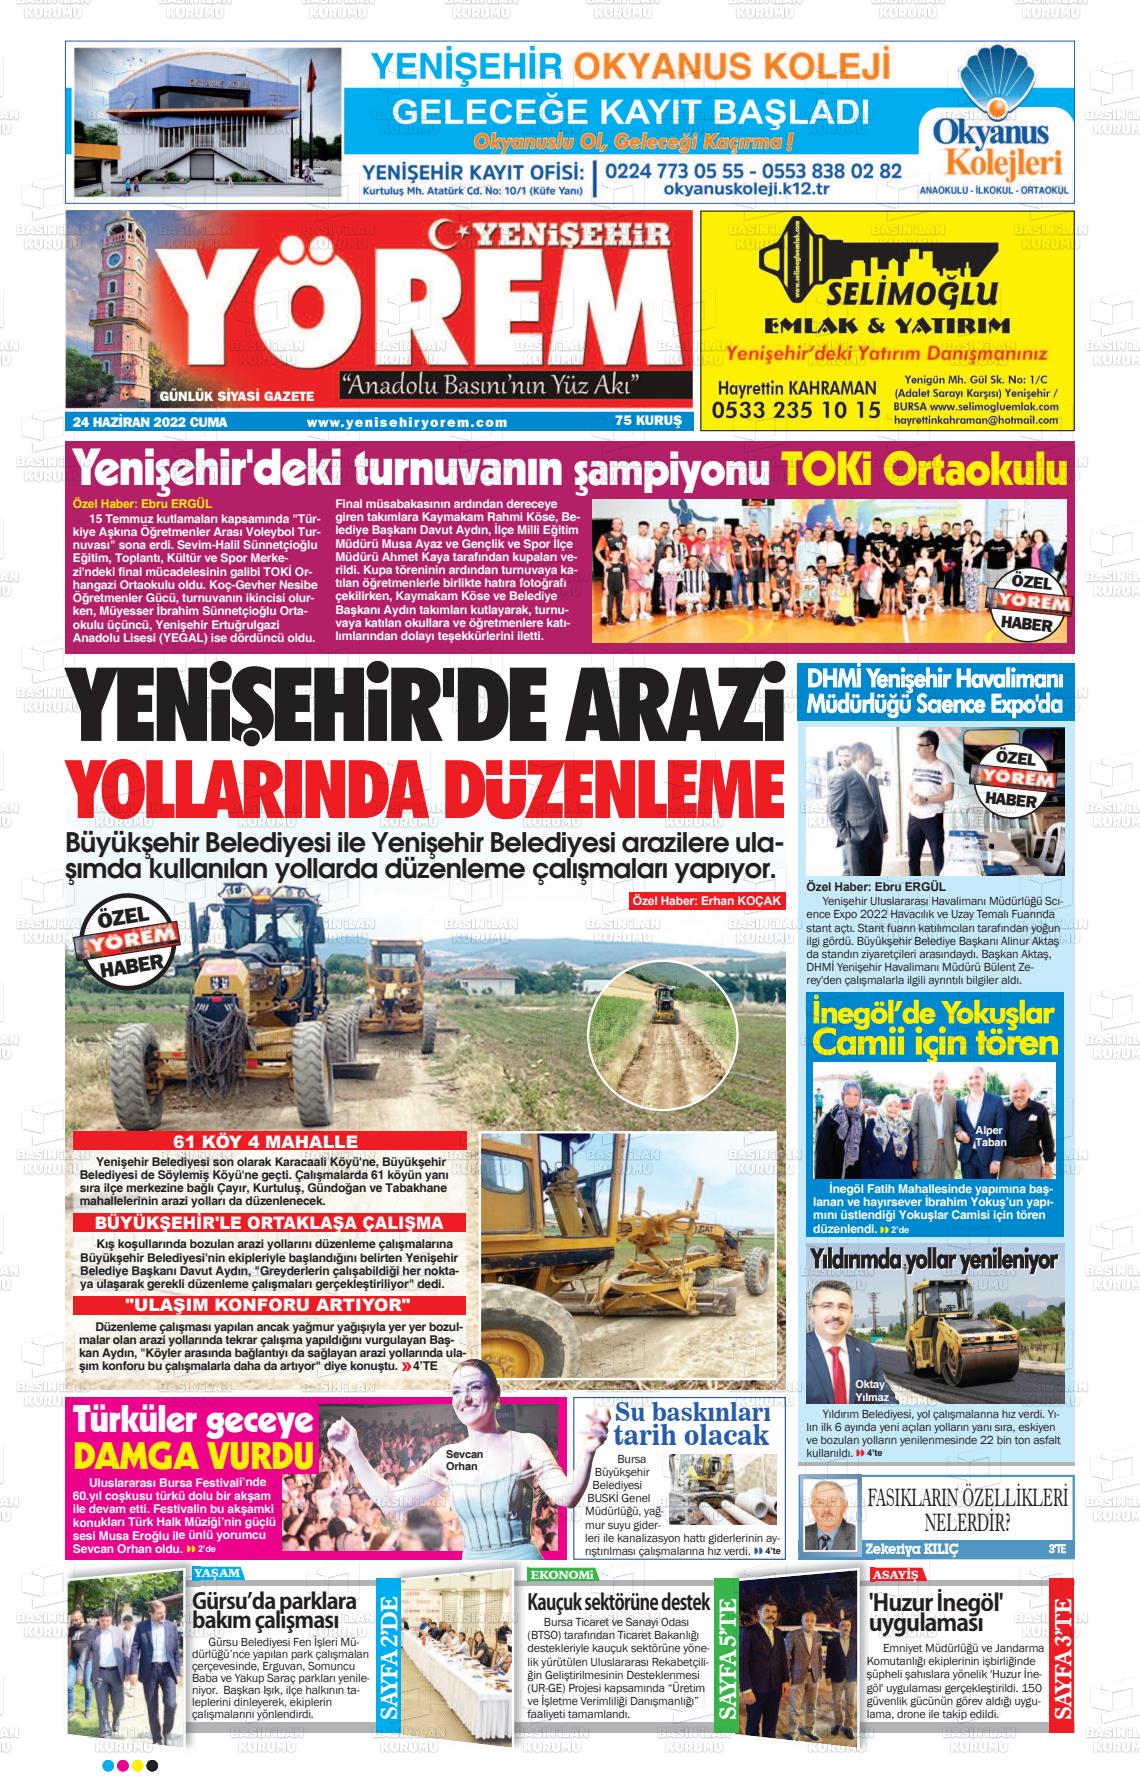 24 Haziran 2022 Yenişehir Yörem Gazete Manşeti